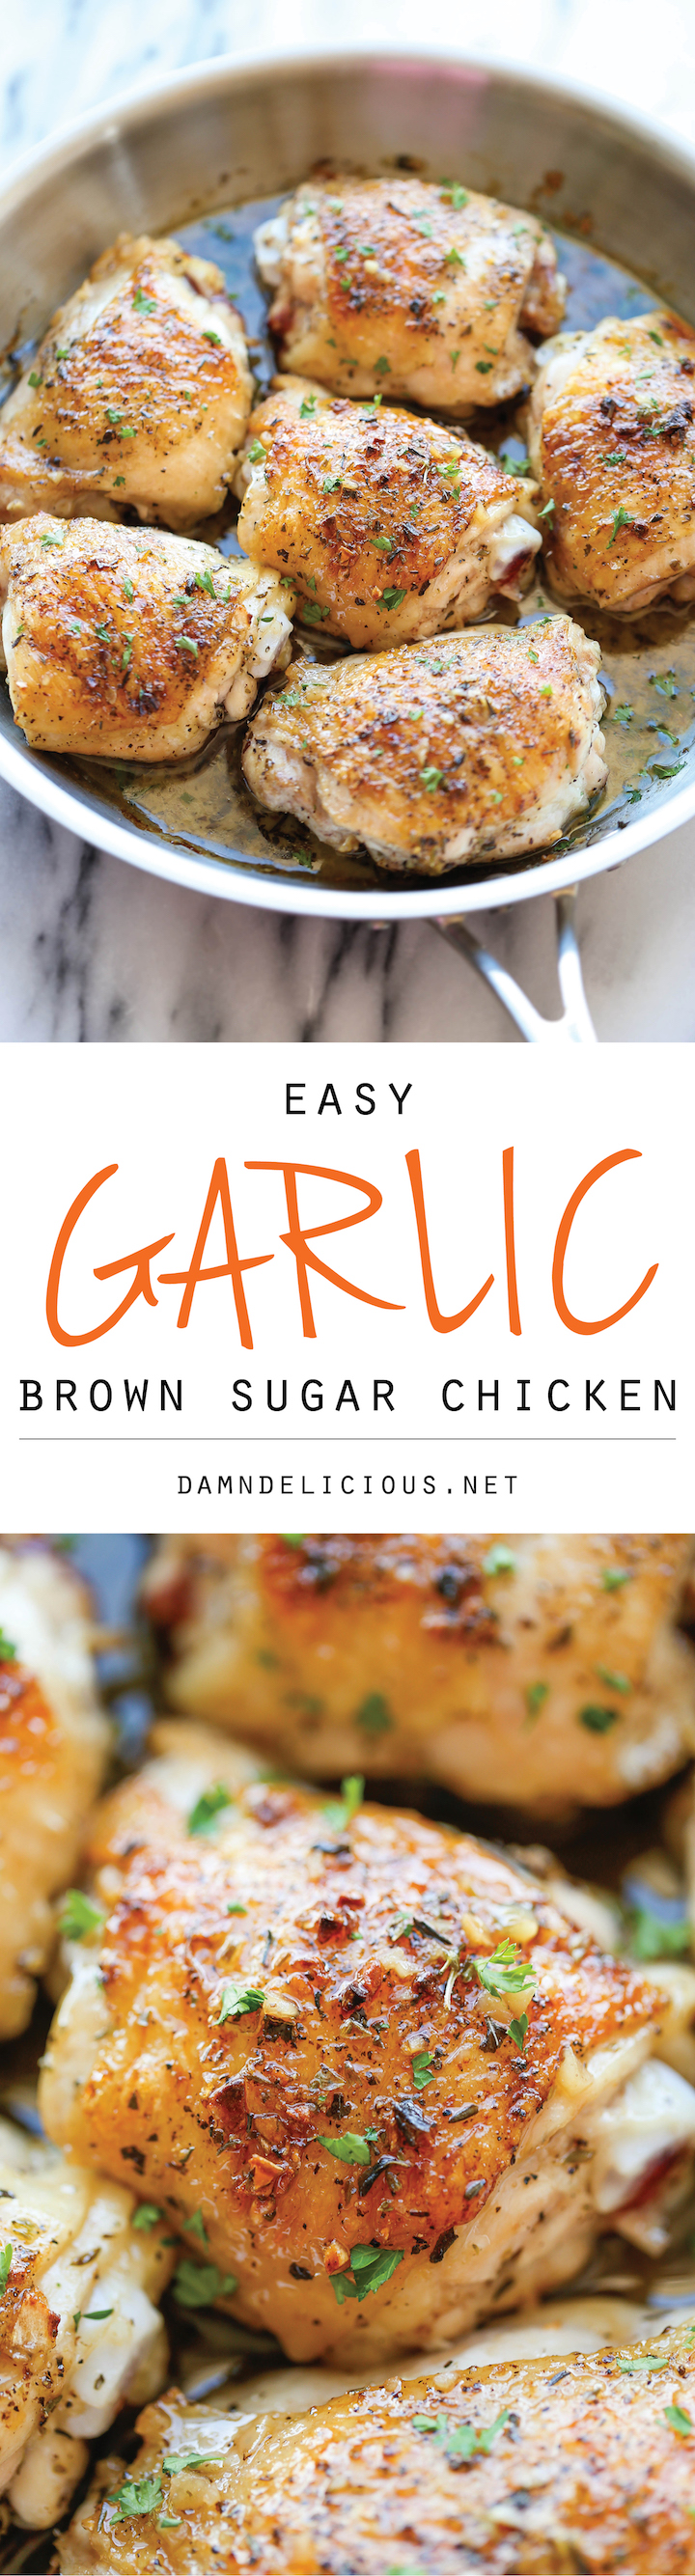 https://s23209.pcdn.co/wp-content/uploads/2014/11/Garlic-Brown-Sugar-Chicken-1.jpg